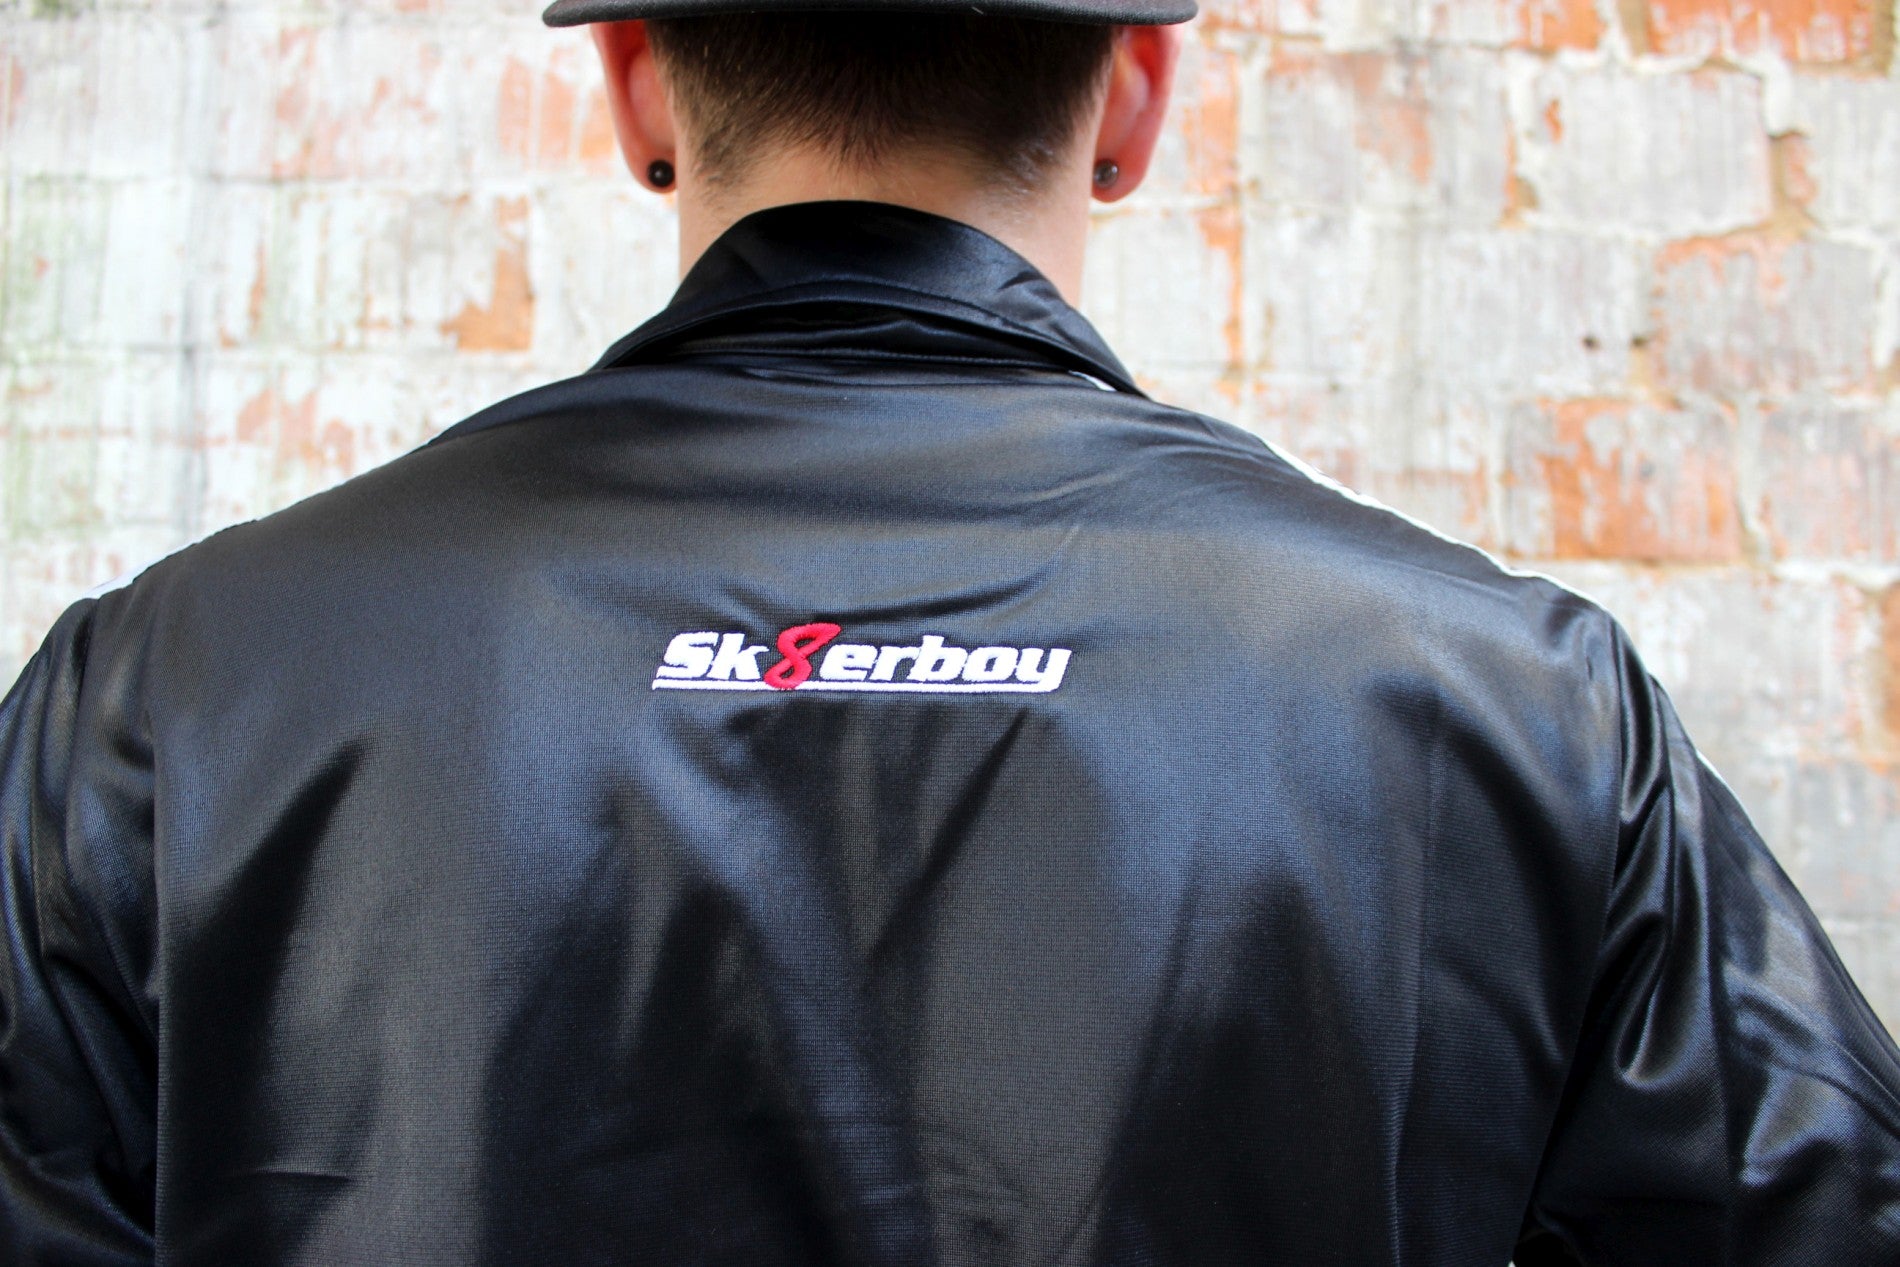 schulter und ruecken der shiny jacket trainingsjacke von sk8erboy in schwarz mit logo zwischen den schultern und schwarzer nike kappe dazu